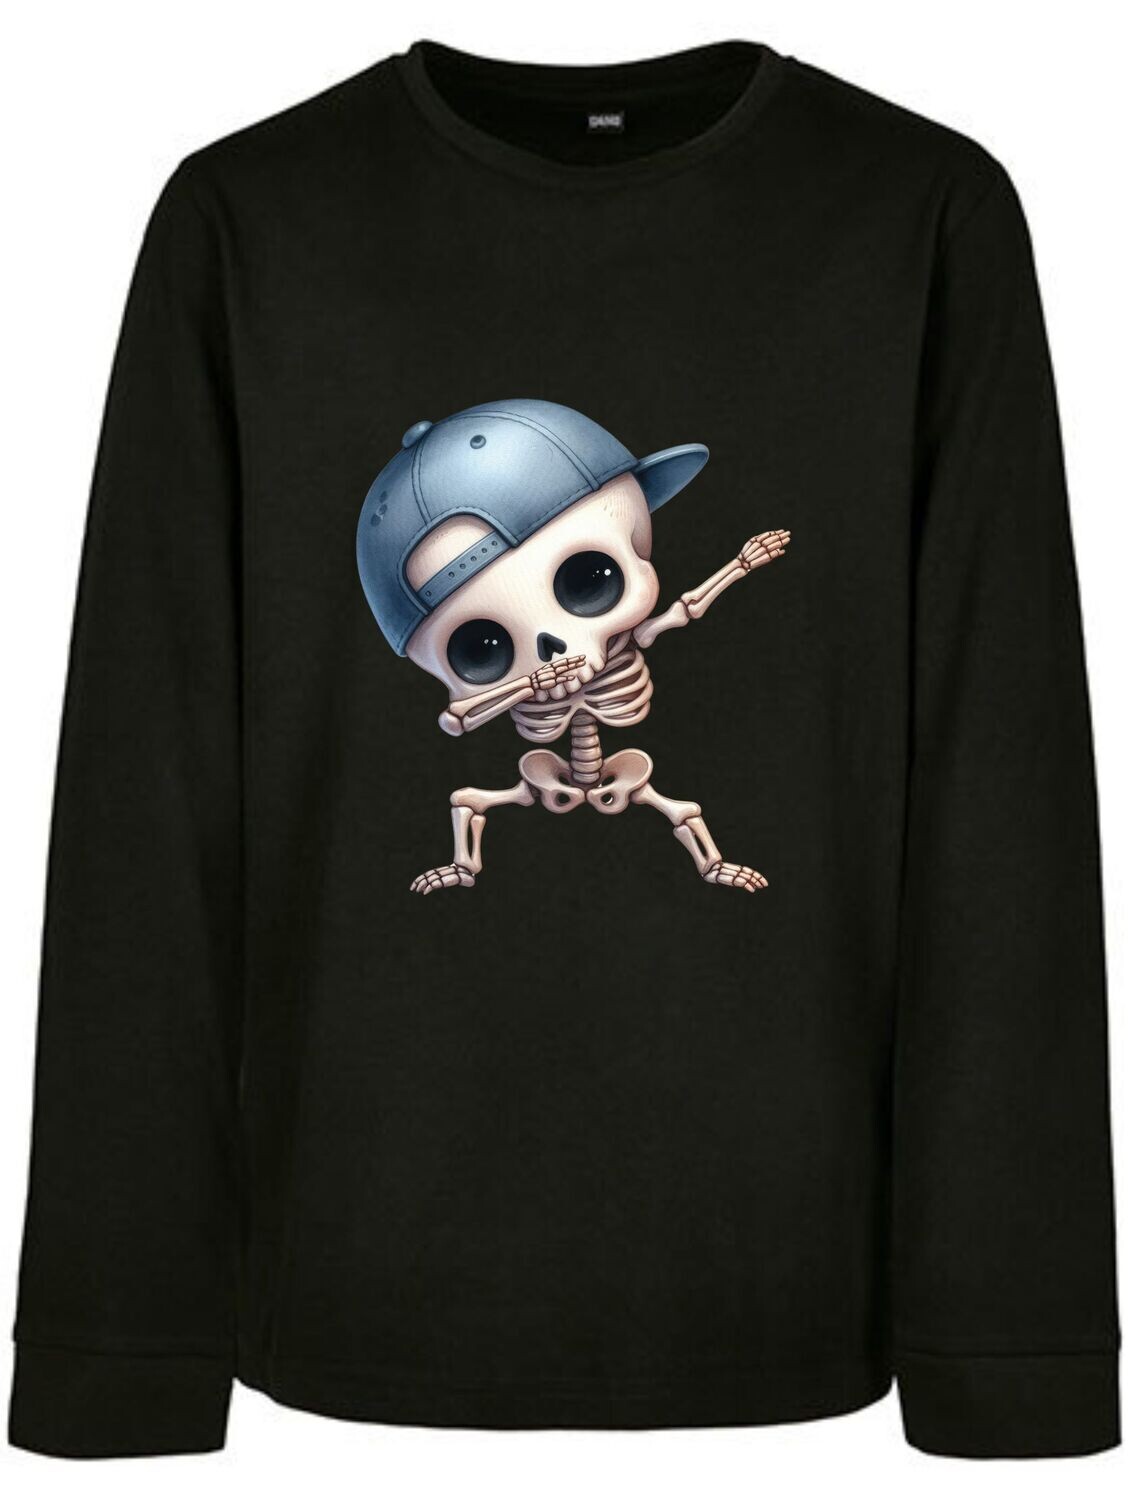 Sweatshirt Skelett Basecap 2